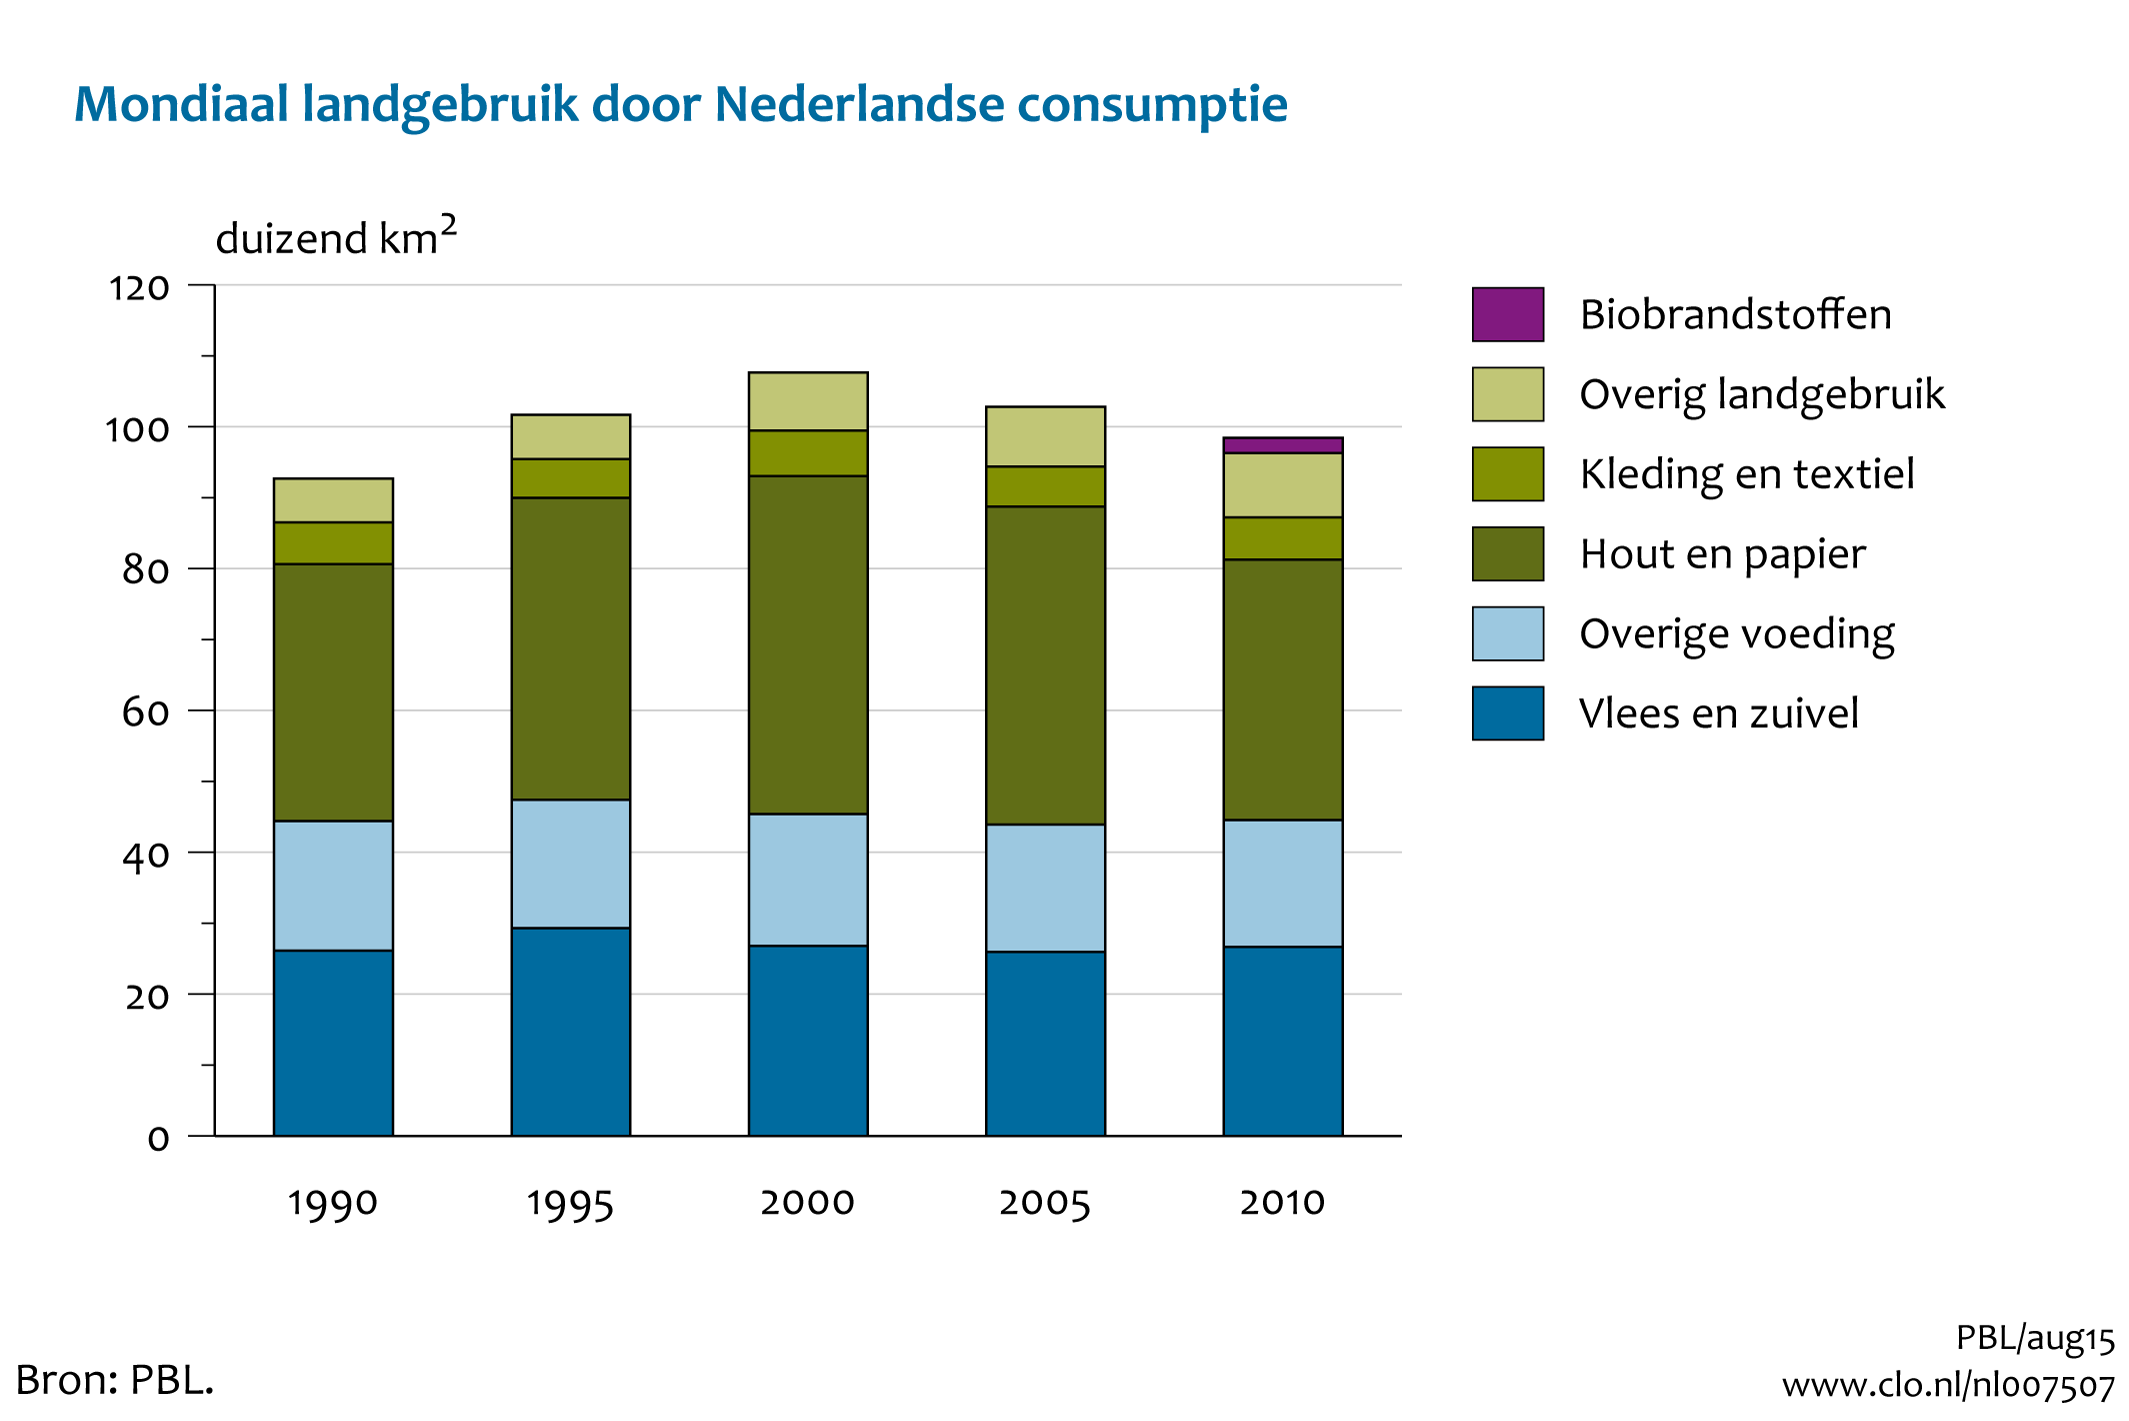 Figuur Mondiaal landgebruik door de Nederlandse consumptie. In de rest van de tekst wordt deze figuur uitgebreider uitgelegd.